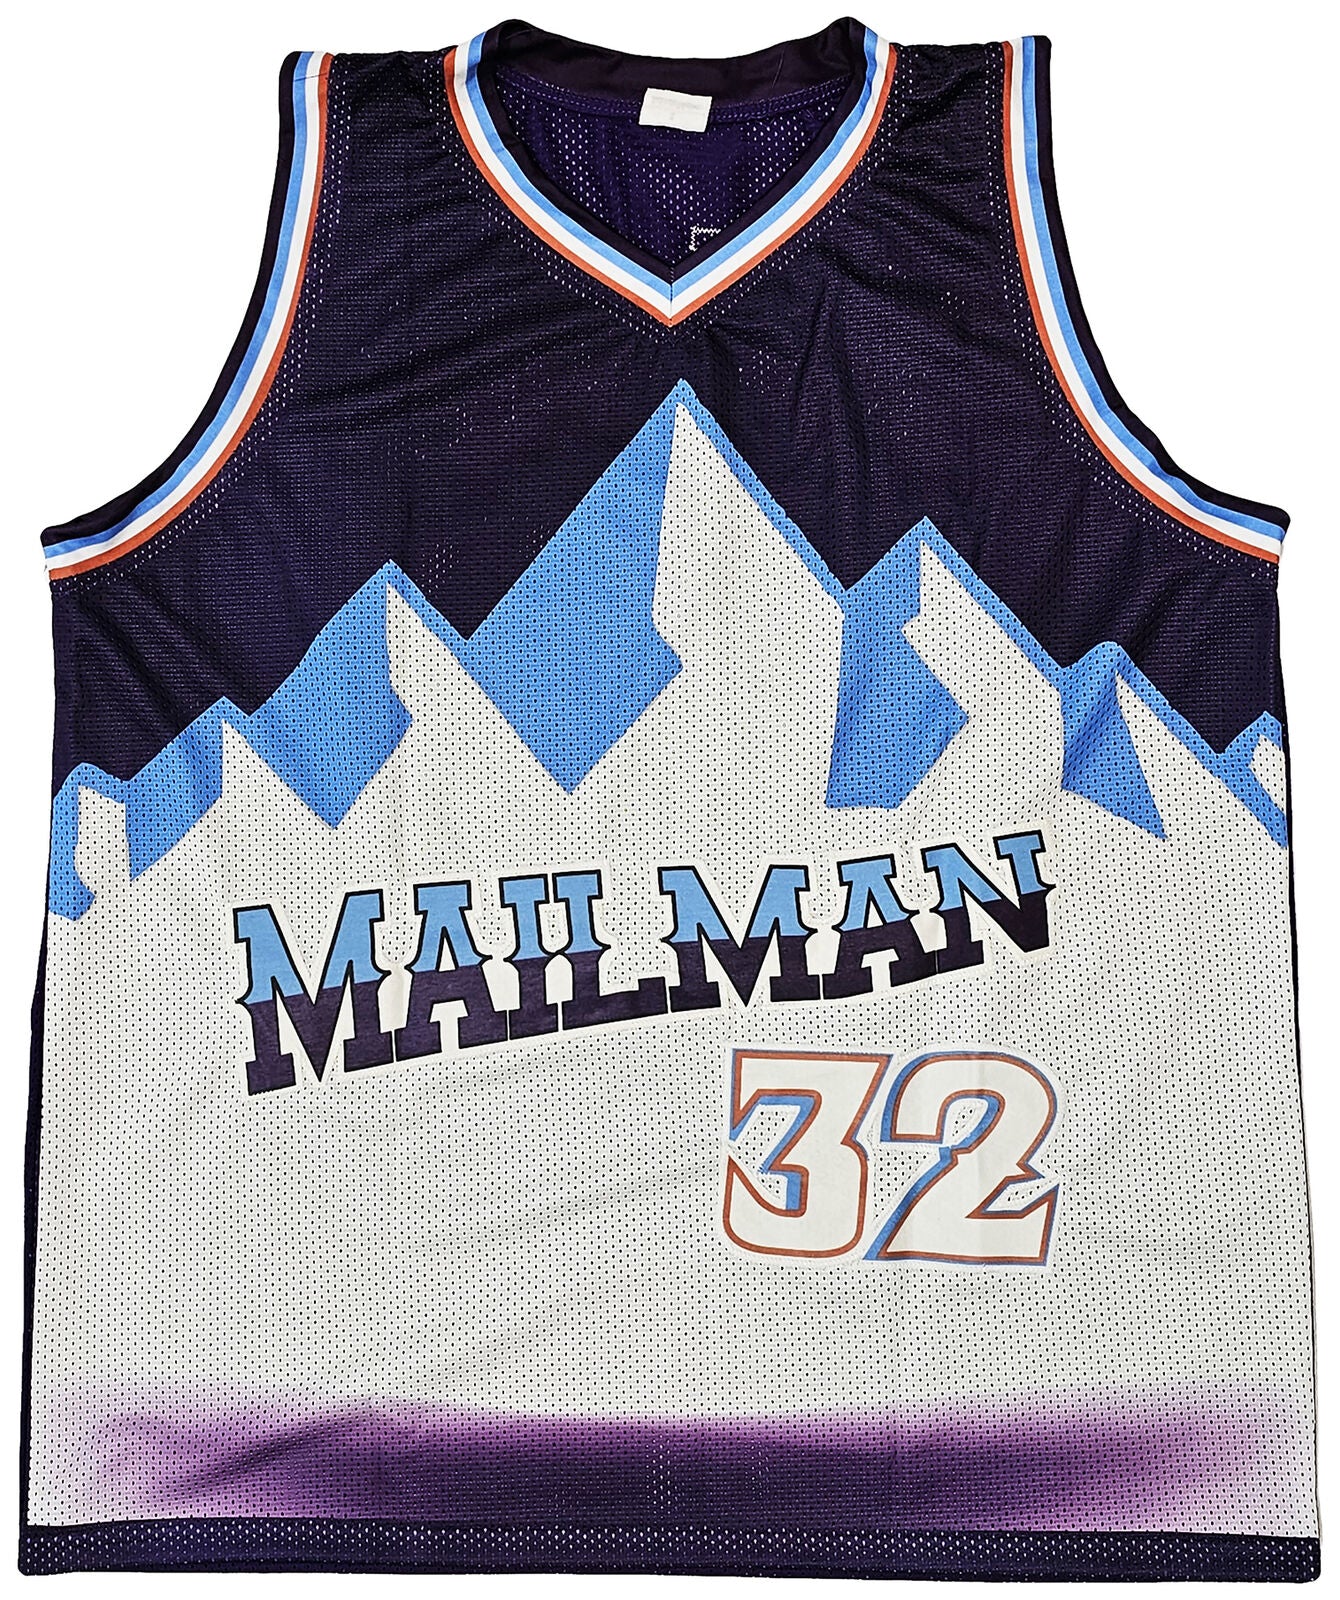 Karl Malone Autographed Utah Mitchell & Ness White Basketball Jersey - BAS